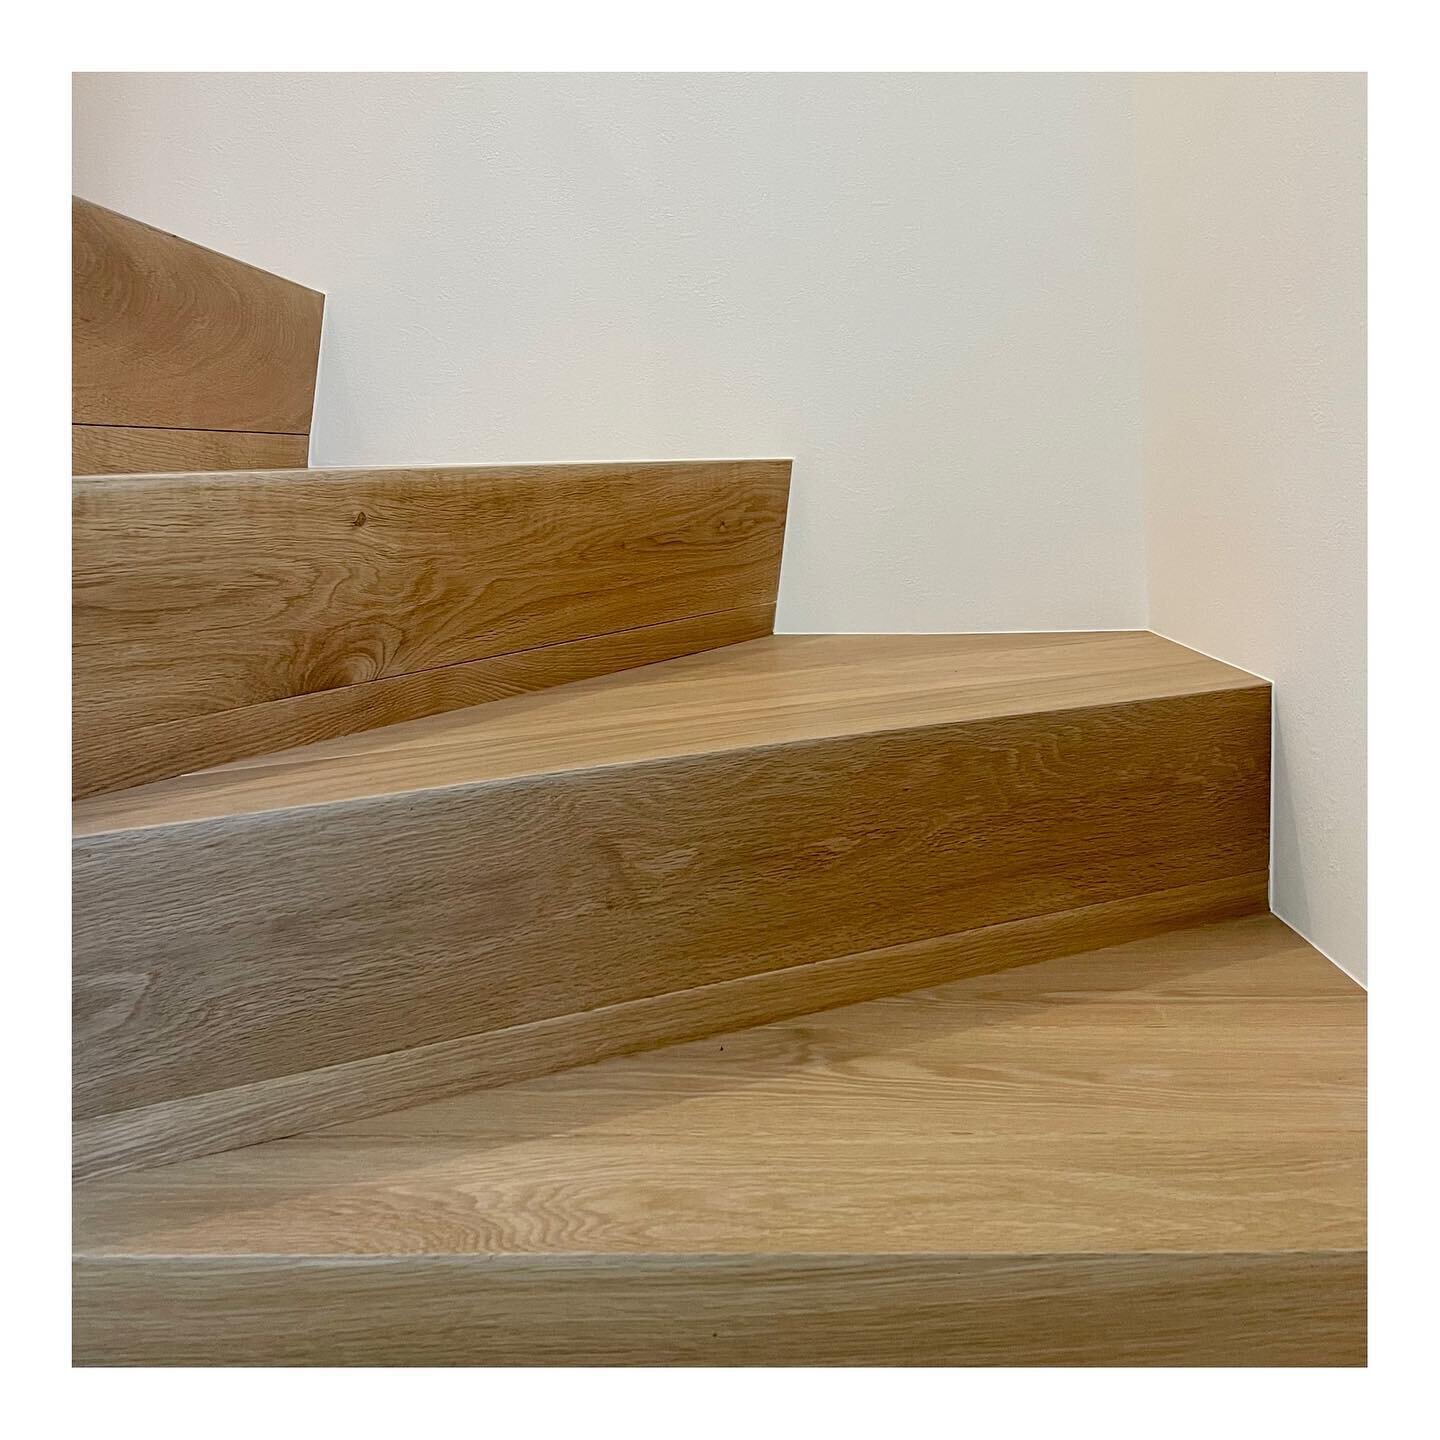 #stairs #detaildesign #oakflooring

#saadarchitects